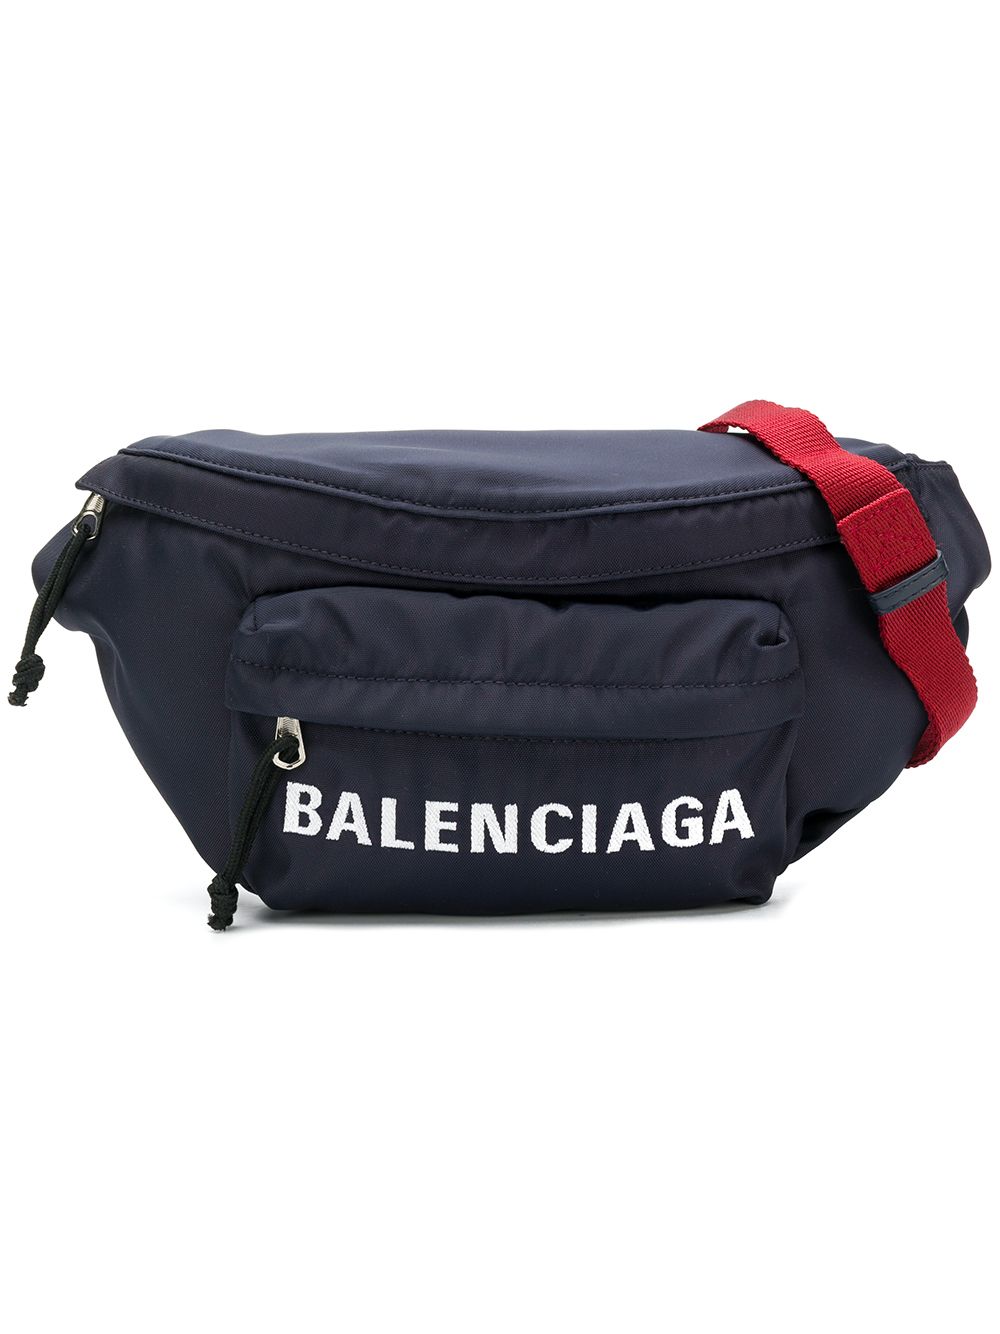 фото Balenciaga поясная сумка с принтом логотипа